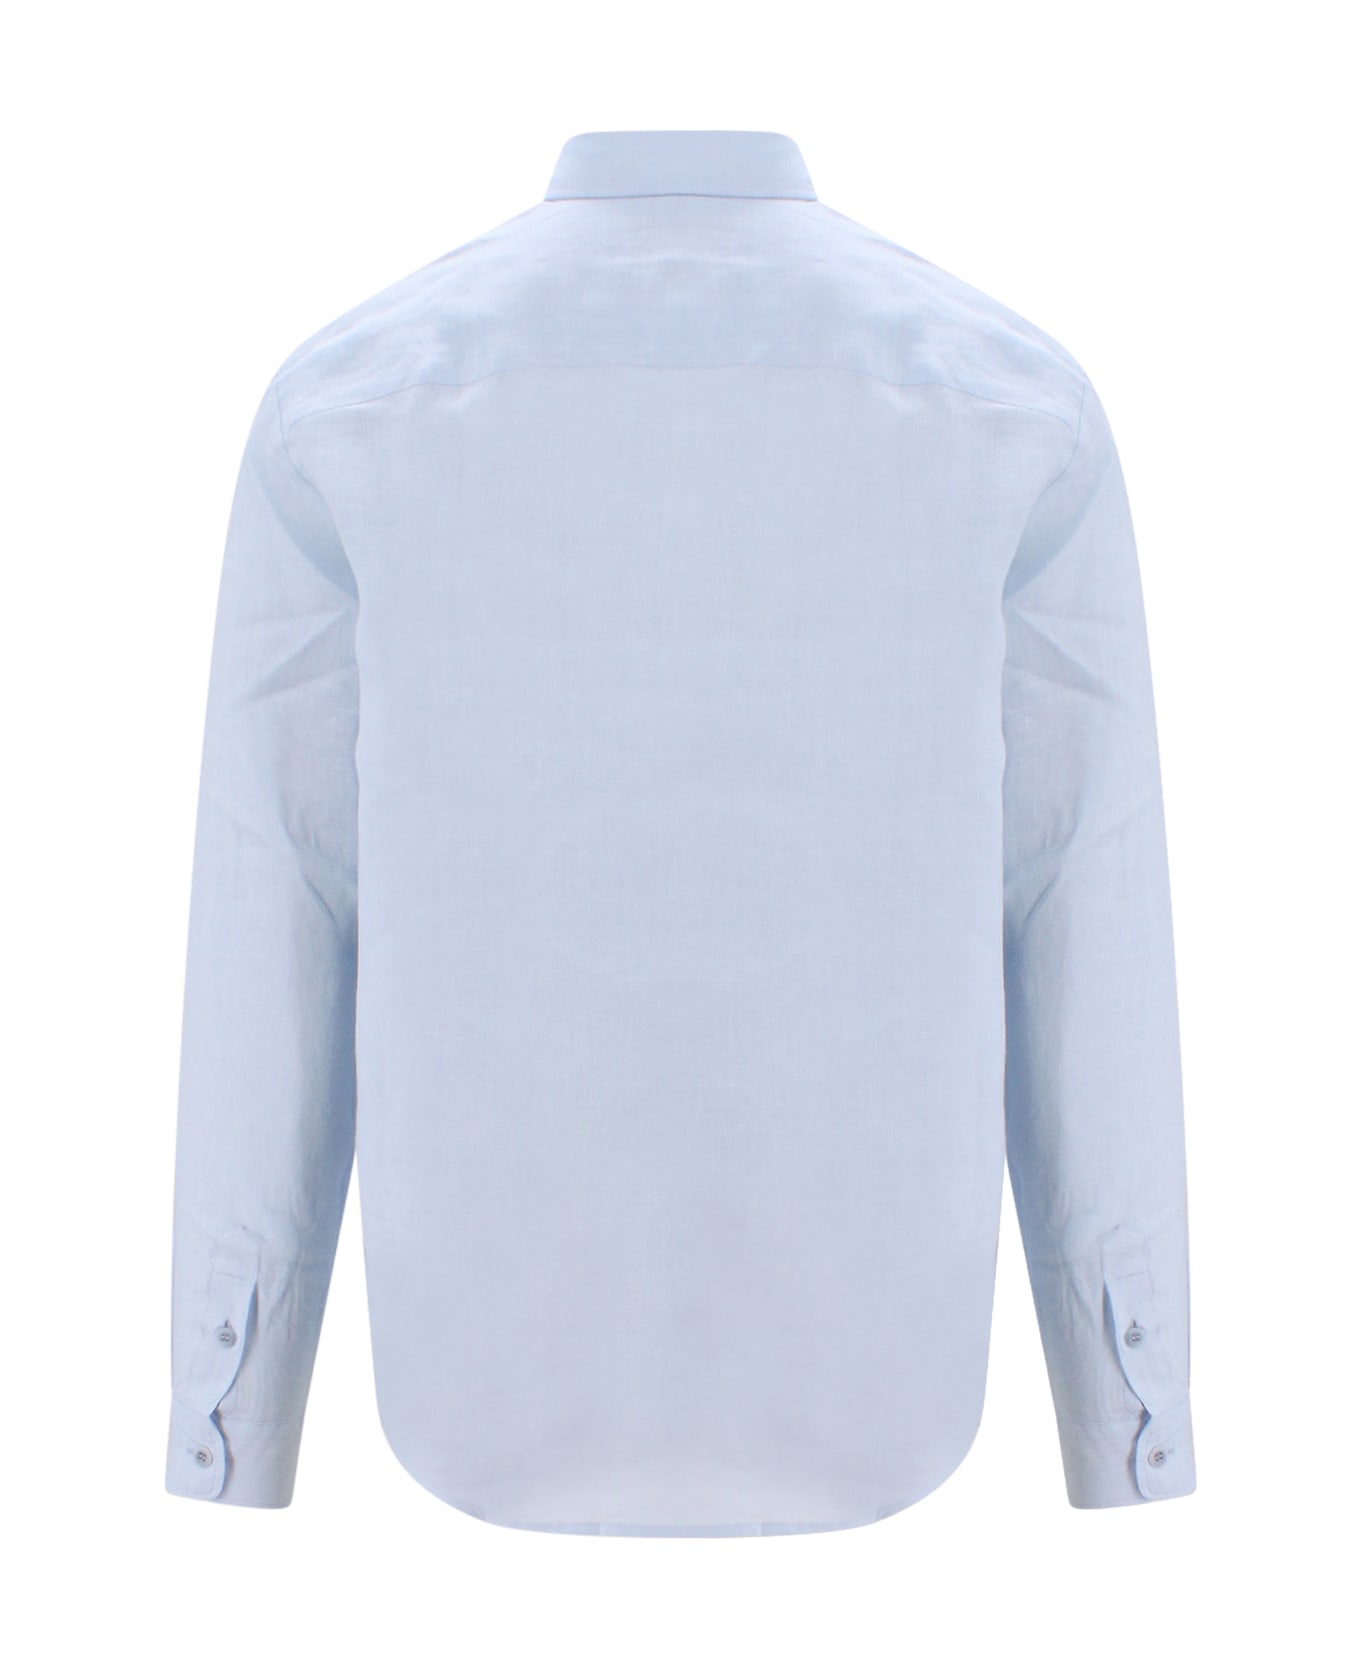 A.P.C. Light Blue Linen Cassel Shirt - Blue シャツ